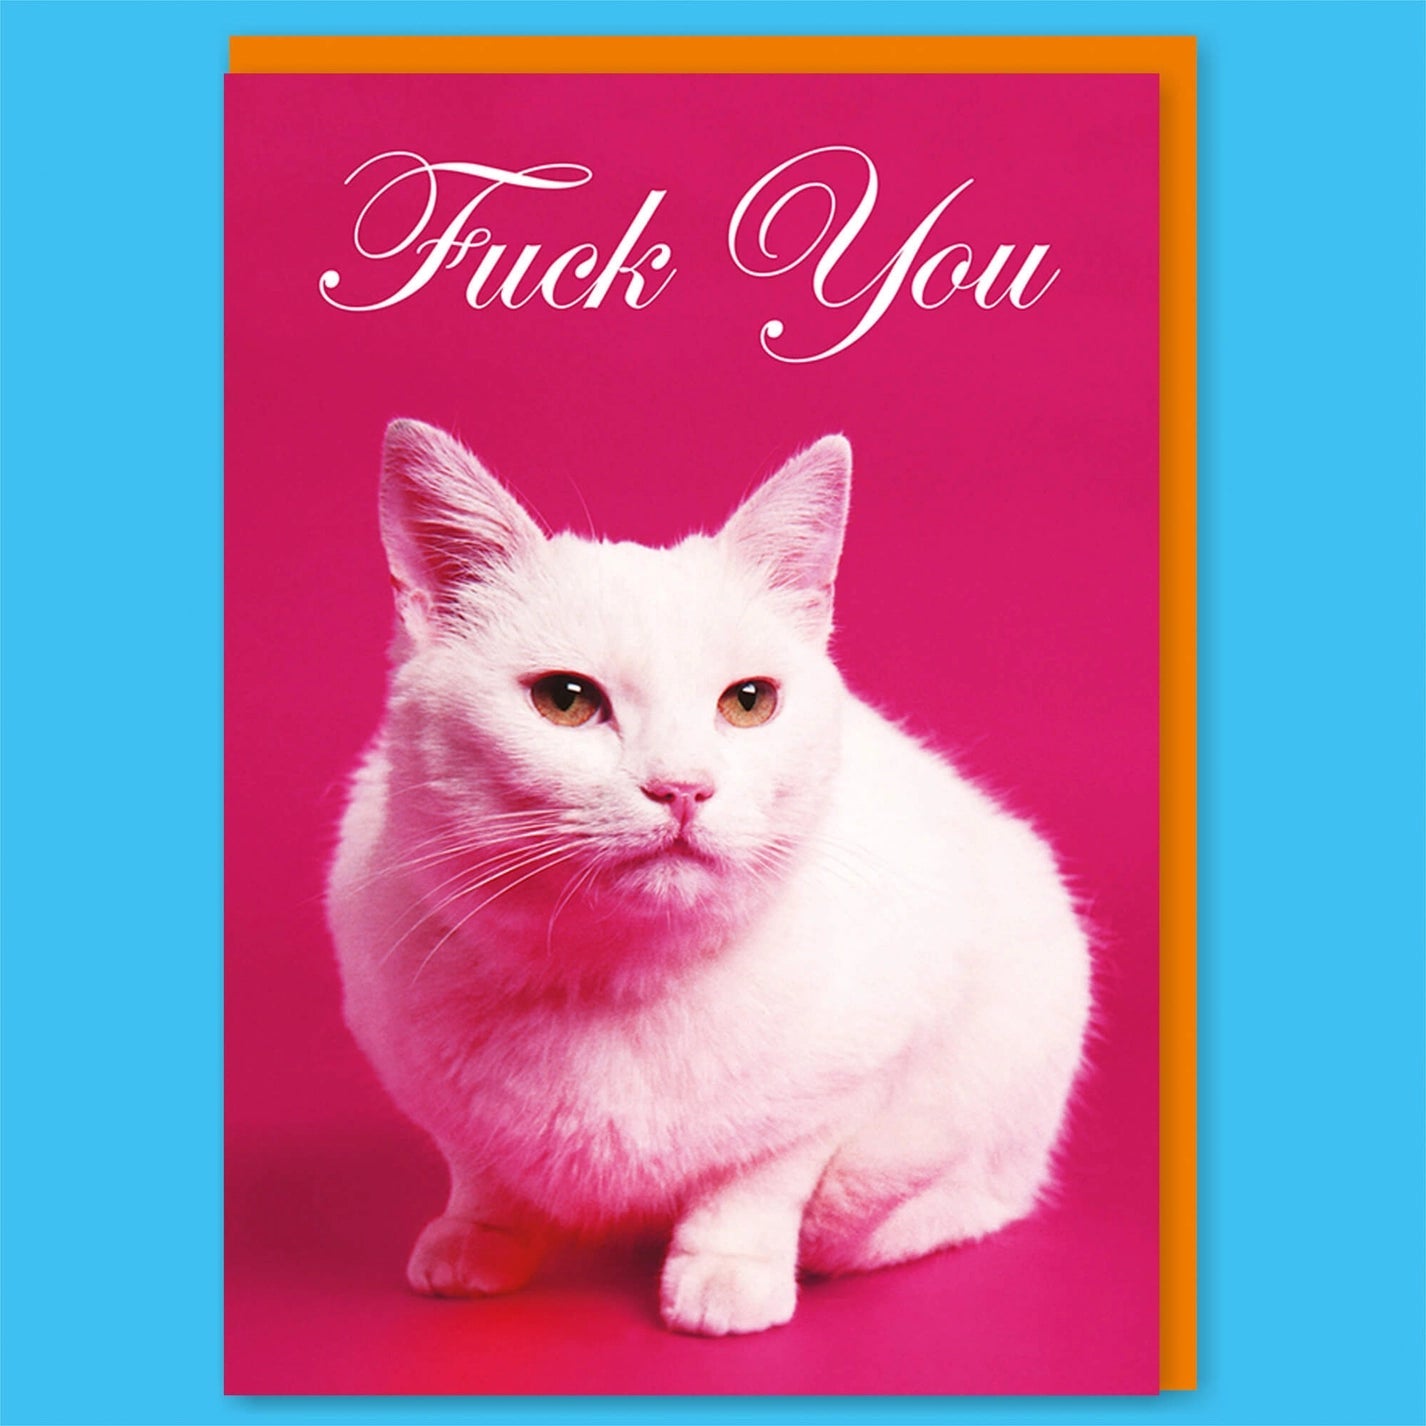 Fuck You Greeting Card w/ Cute Cat Design